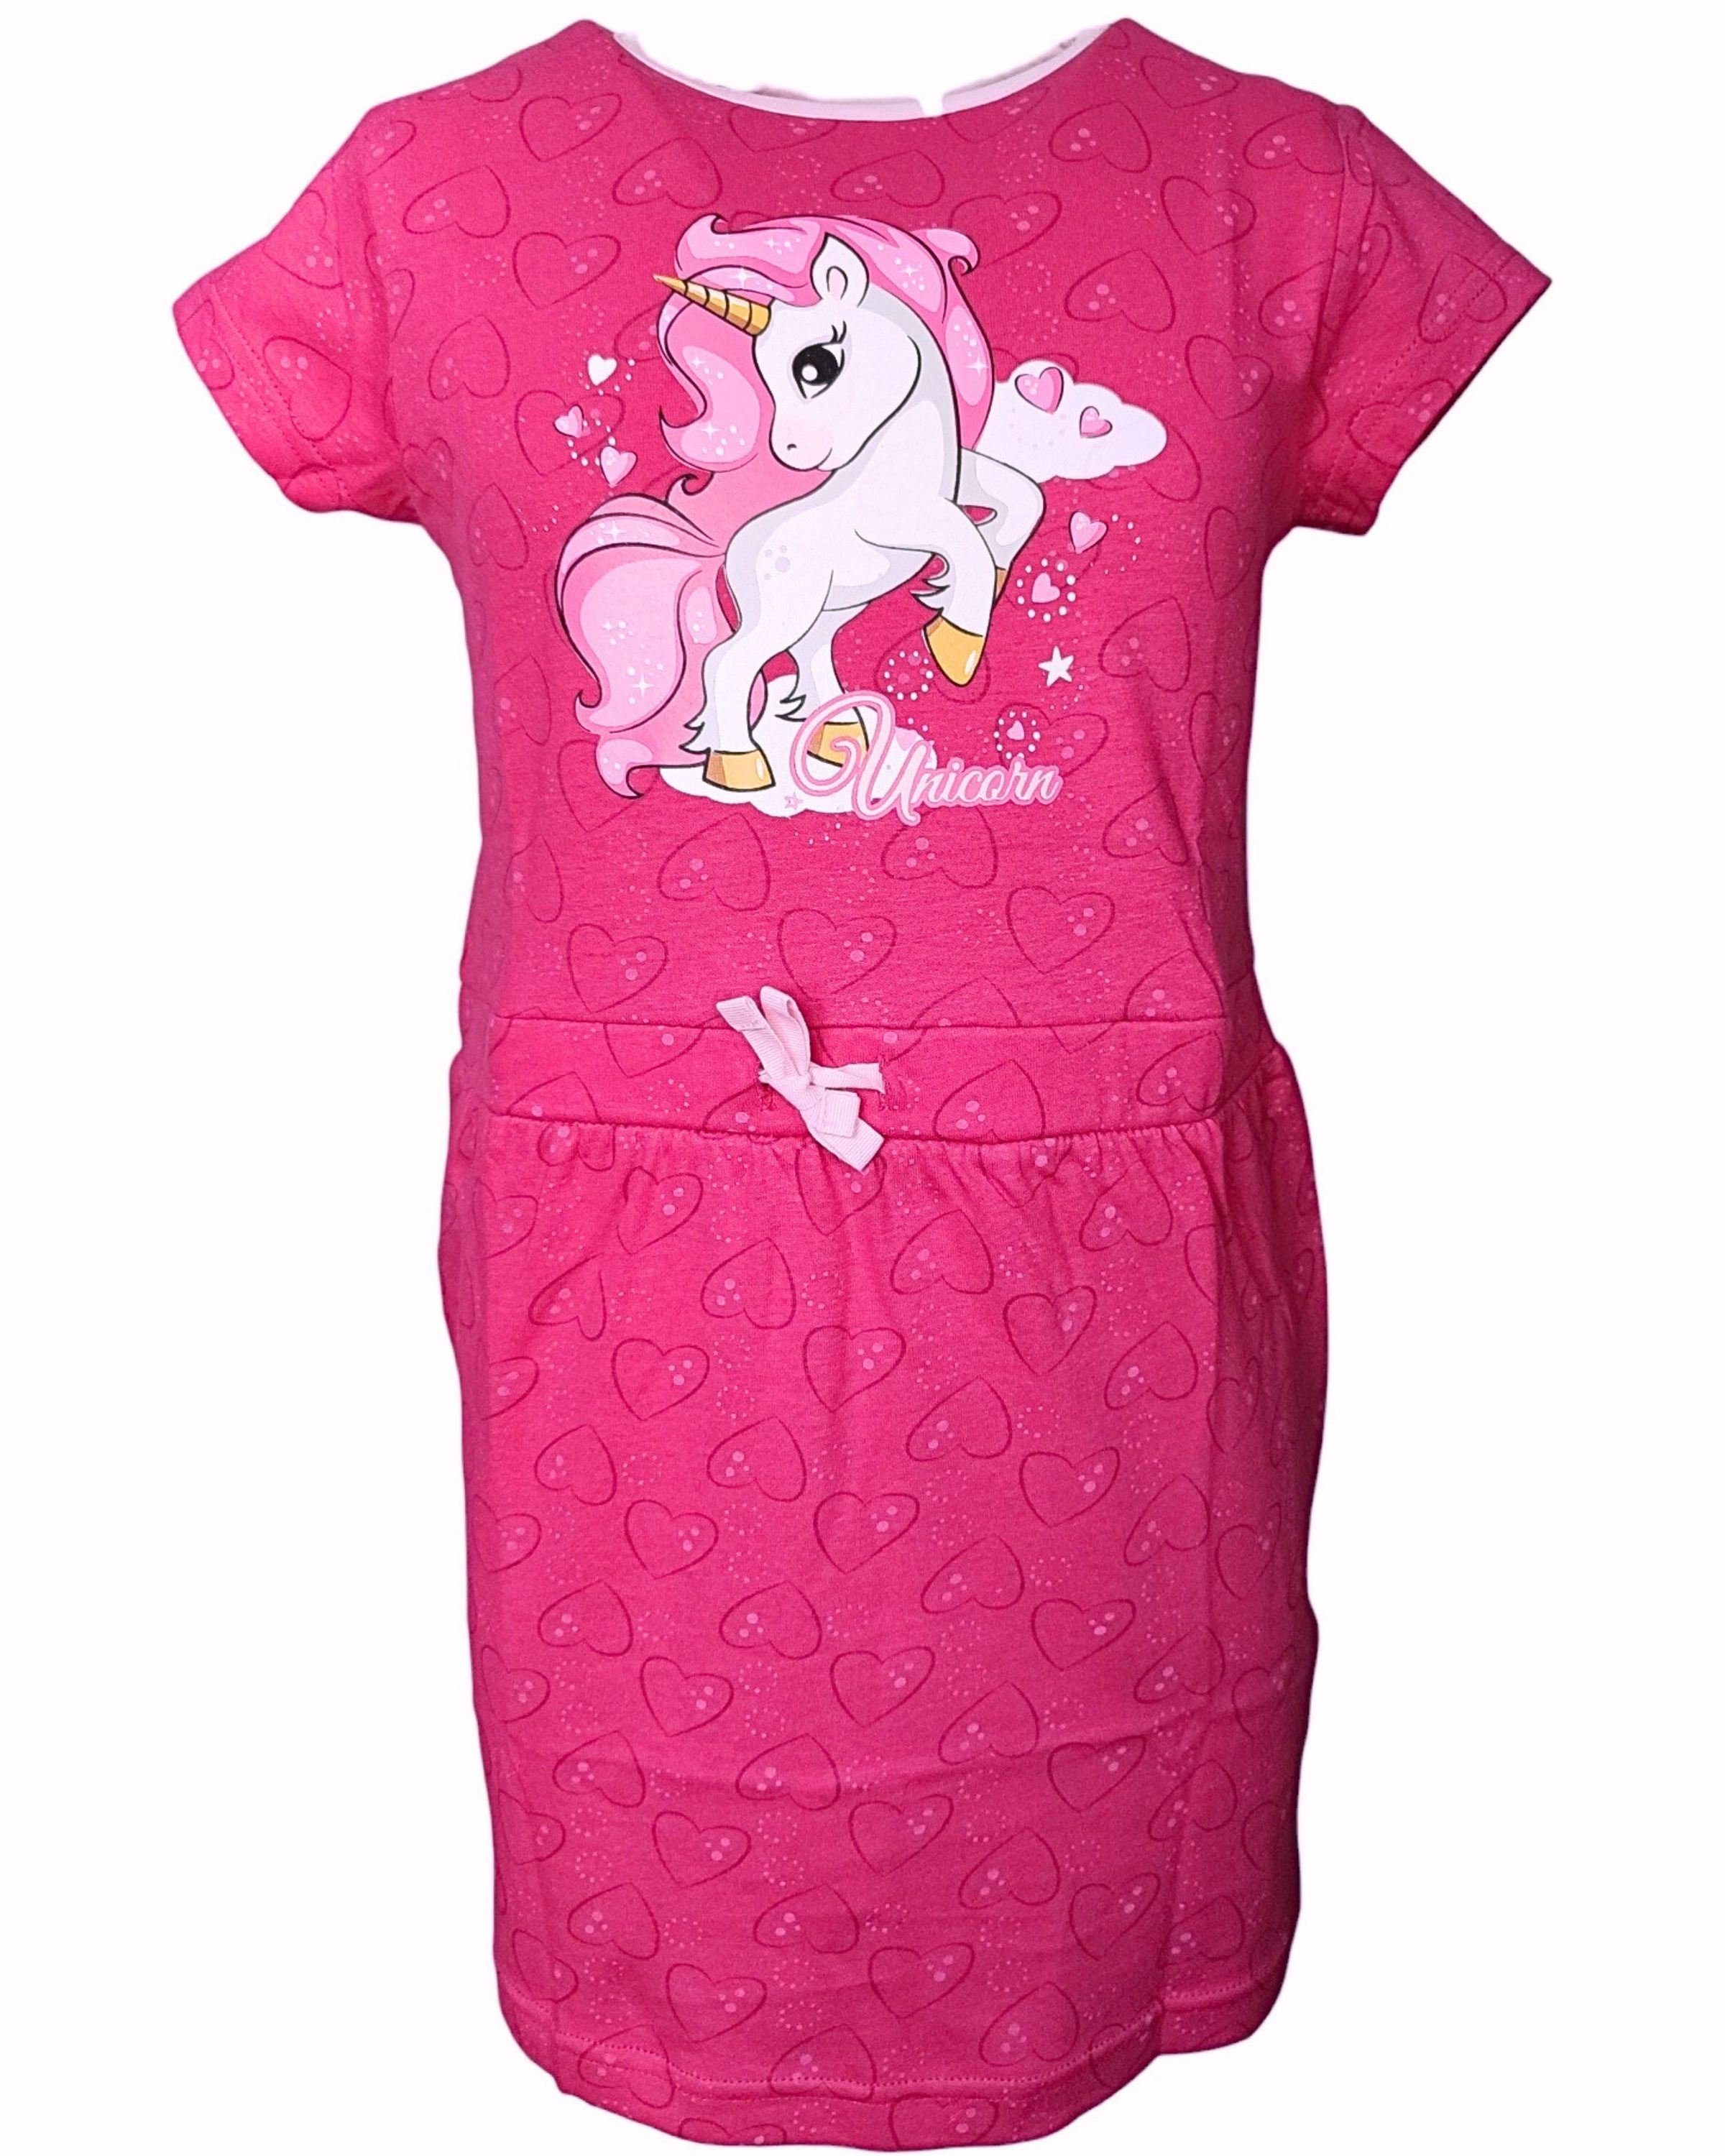 United Essentials Sommerkleid Einhorn Jerseykleid für Mädchen Gr. 98-128 cm Pink | Sommerkleider